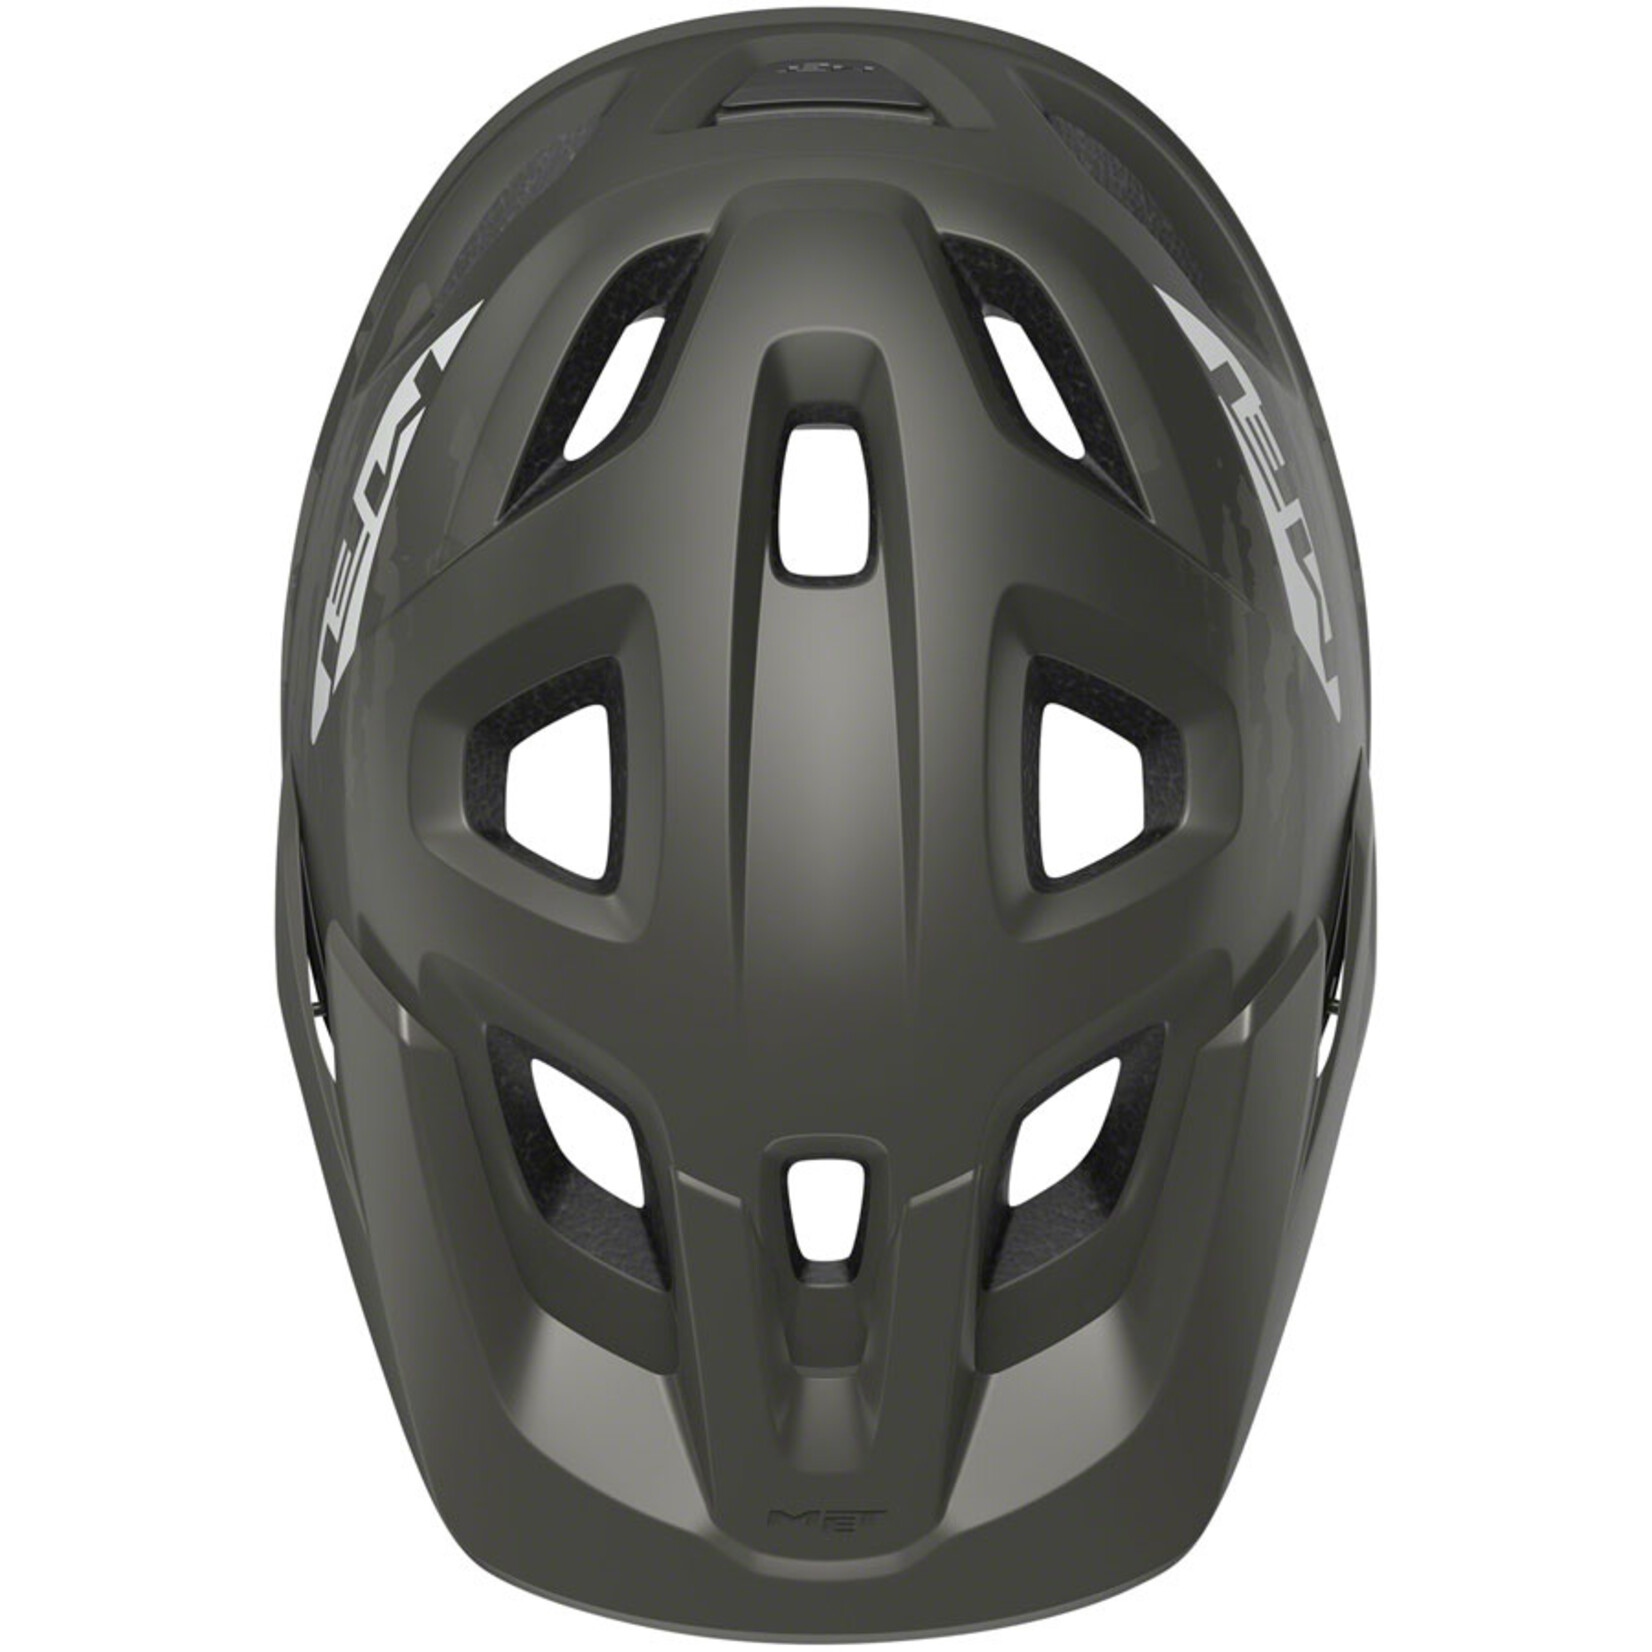 MET Helmets MET Echo MIPS Helmet - Titanium Metallic, Matte, Medium/Large